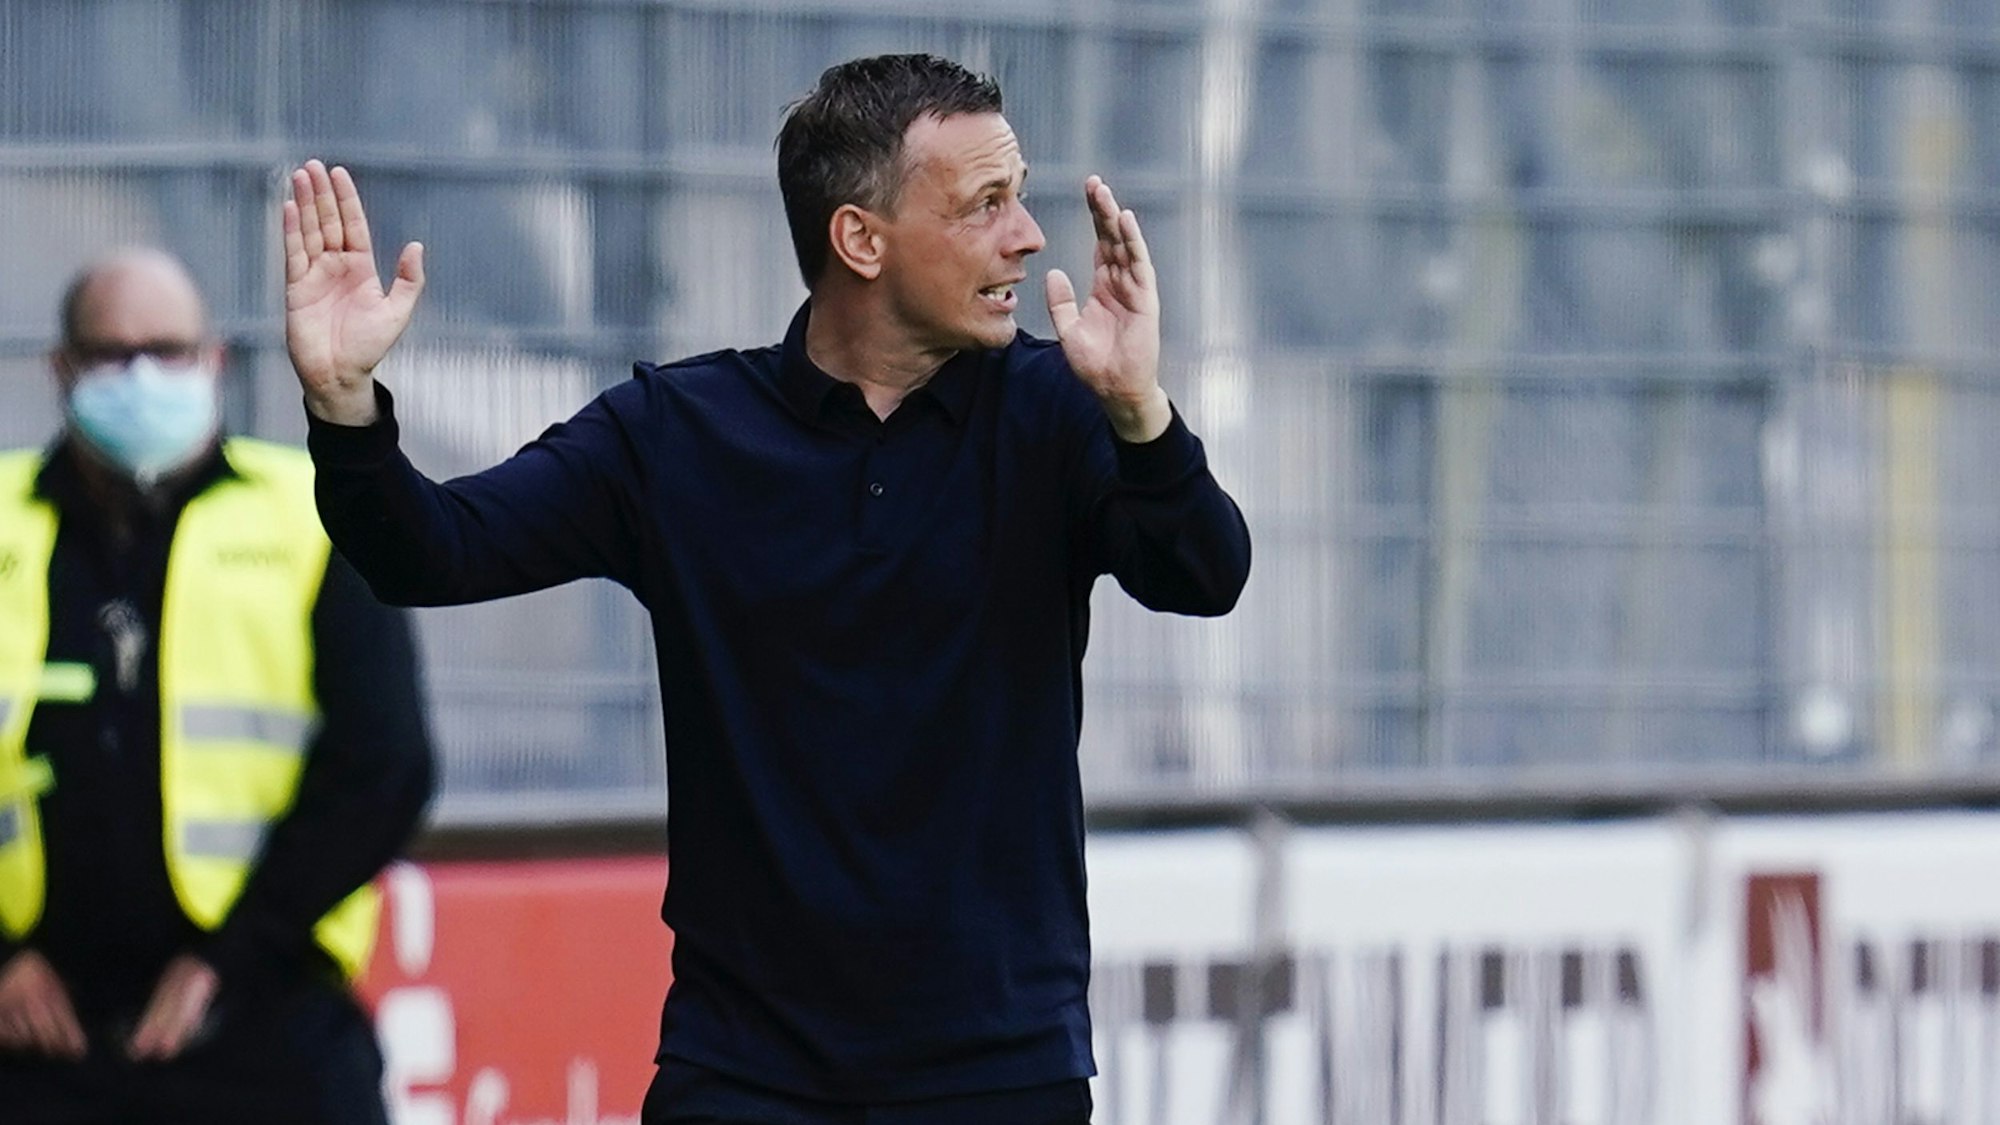 Fortuna Düsseldorfs Trainer Christian Preußer gestikuliert am Spielfeldrand.